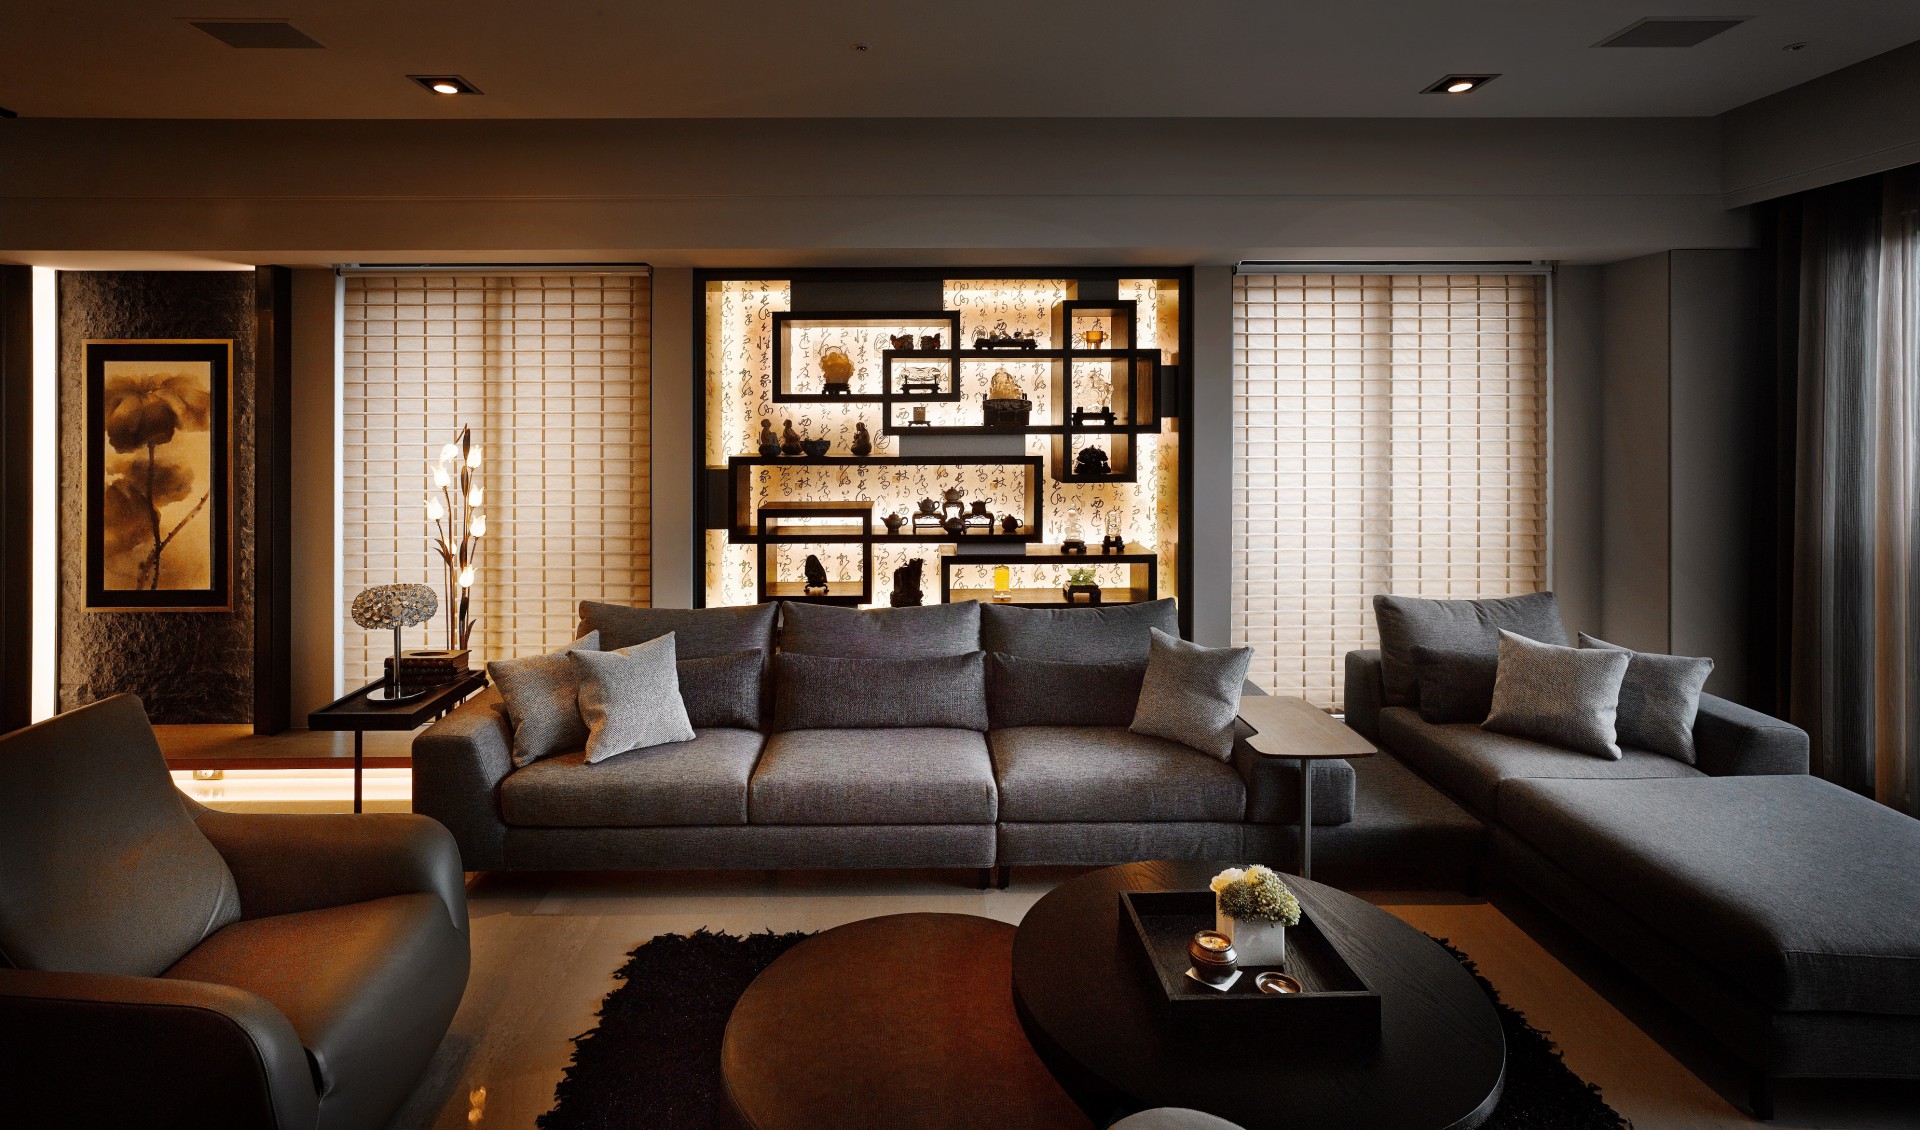 客厅整体配色毒牙，灰色布艺沙发围合式布局，背景墙设计丰盈了空间质感。